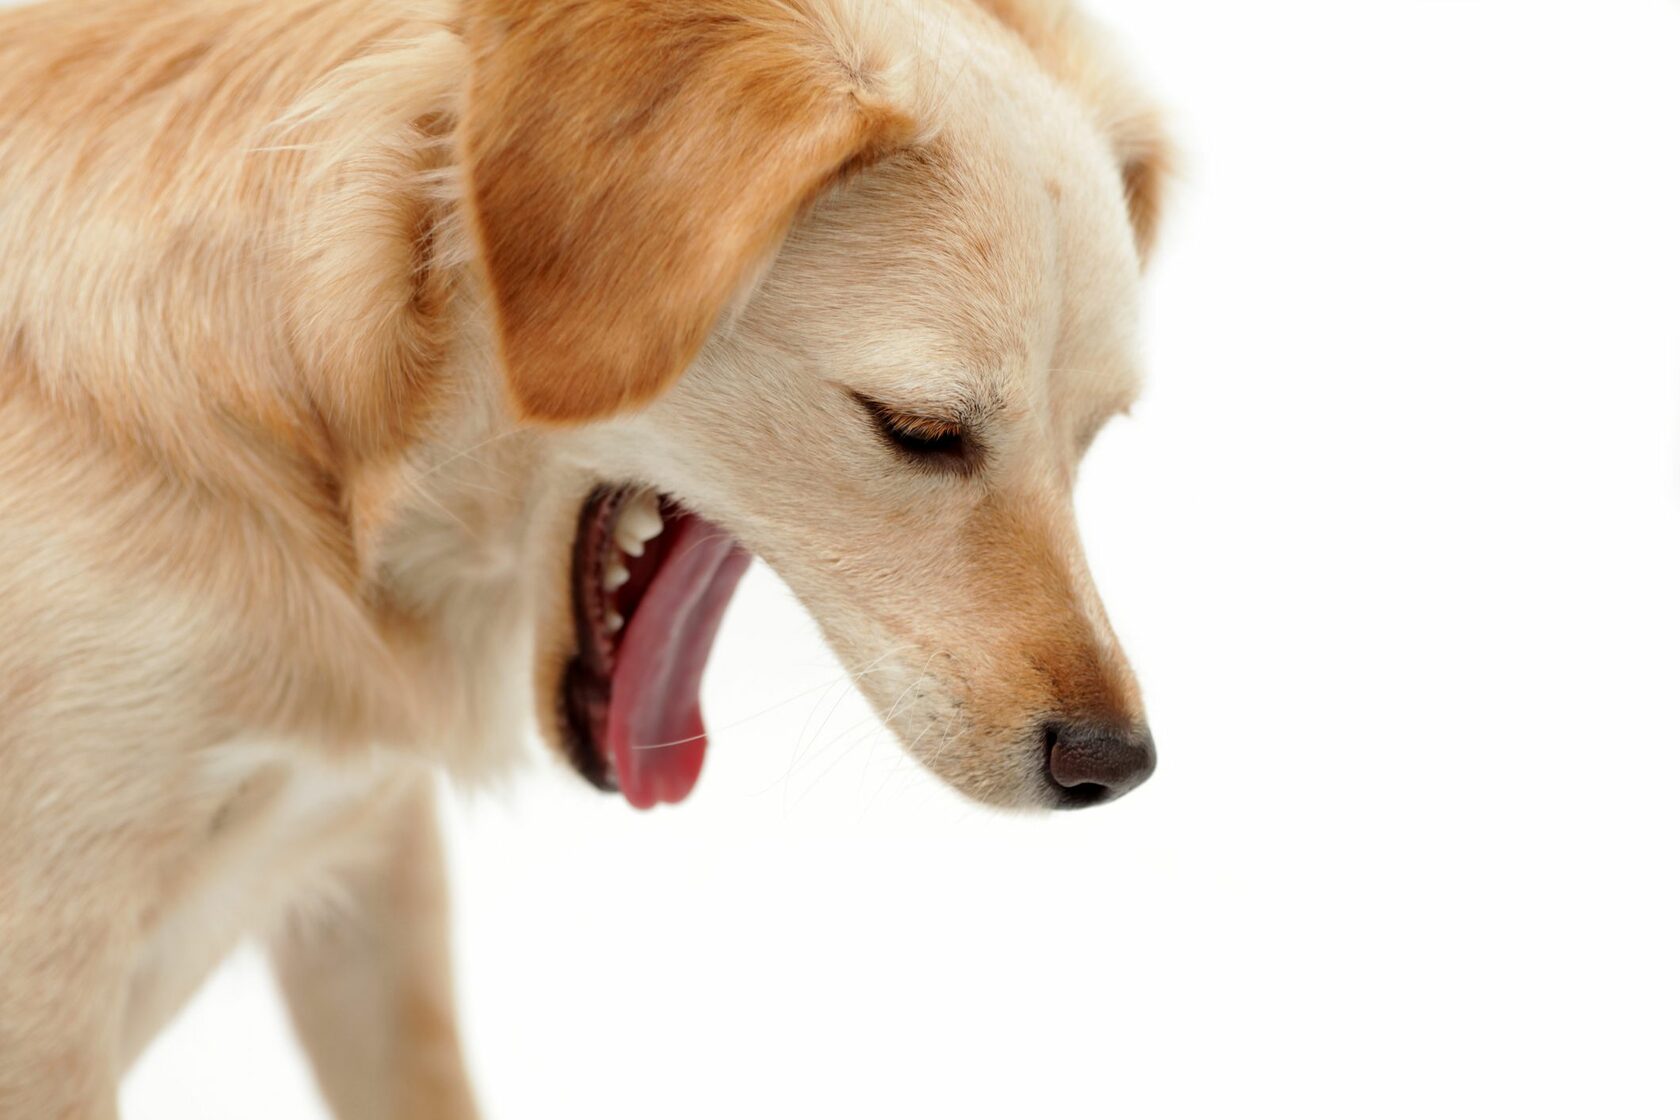 Как остановить рвоту у собаки в домашних условиях 1 остановить рвоту у собаки